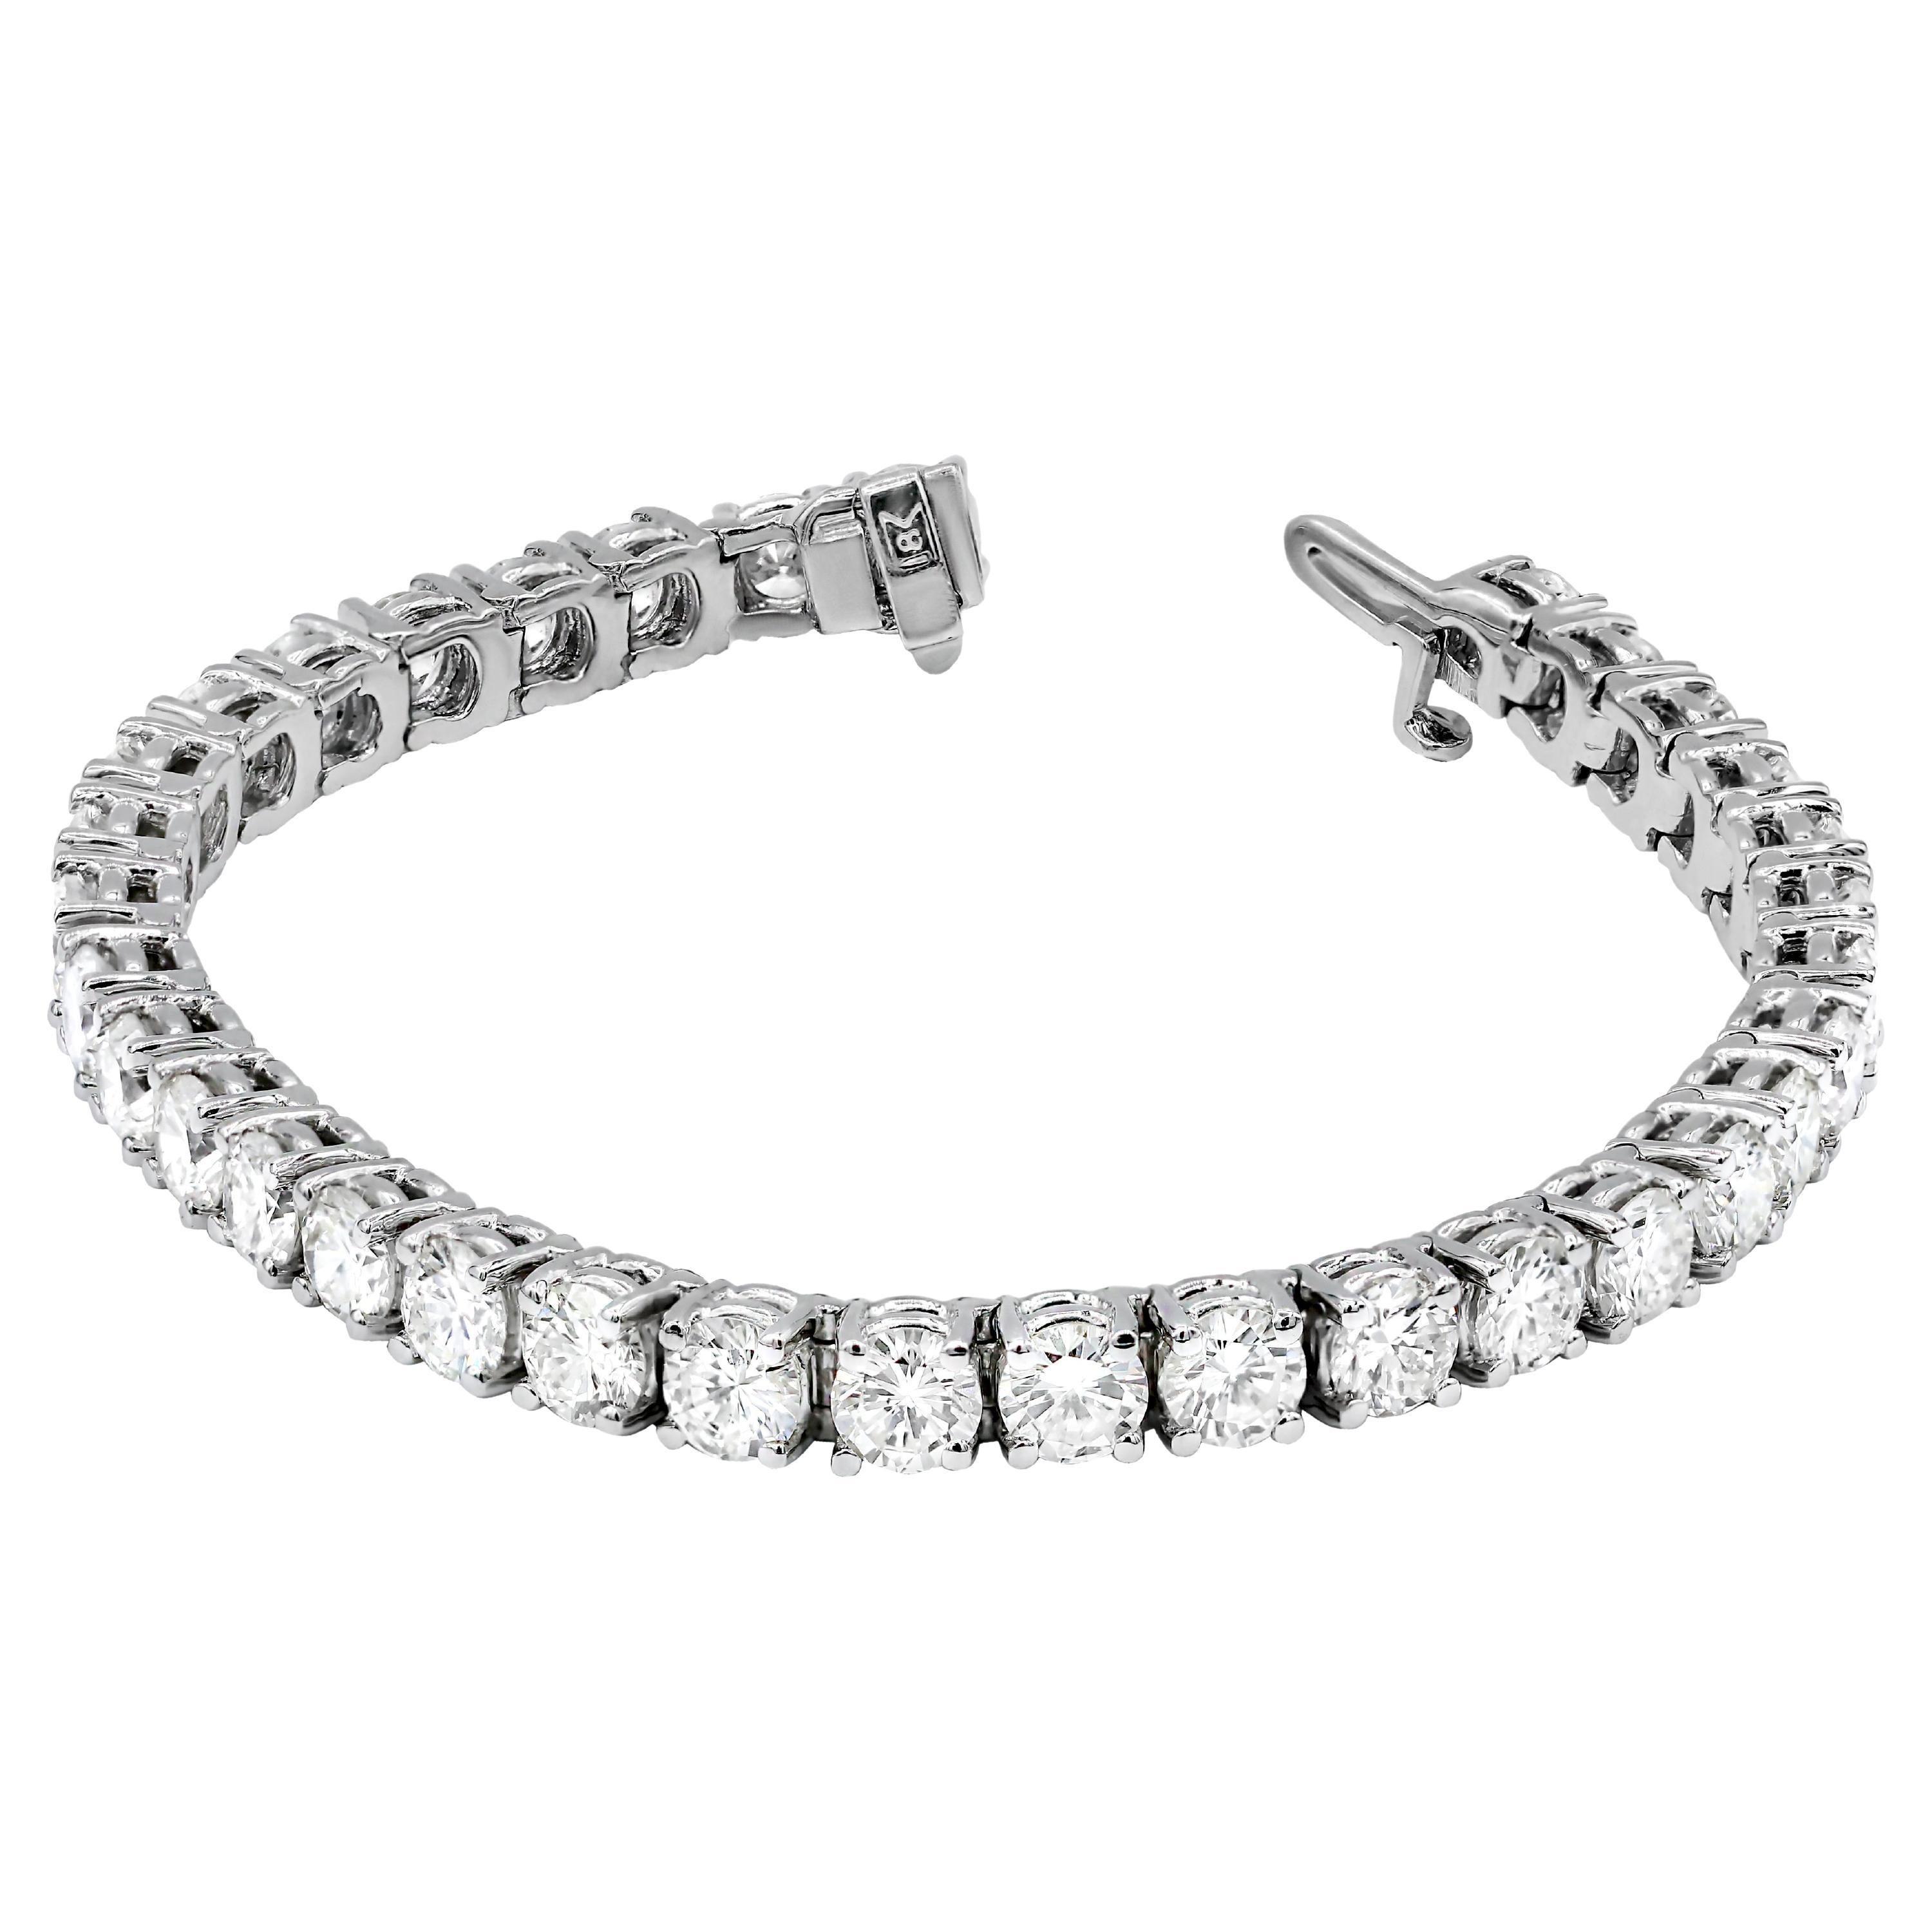 Le bracelet de tennis en or blanc 14kt contient 6.00 cts tw de diamants ronds GH SI.
A&M est un fournisseur de premier plan de bijoux fins de qualité supérieure depuis plus de 35 ans.
Diana M-One est un magasin unique pour tous vos achats de bijoux,